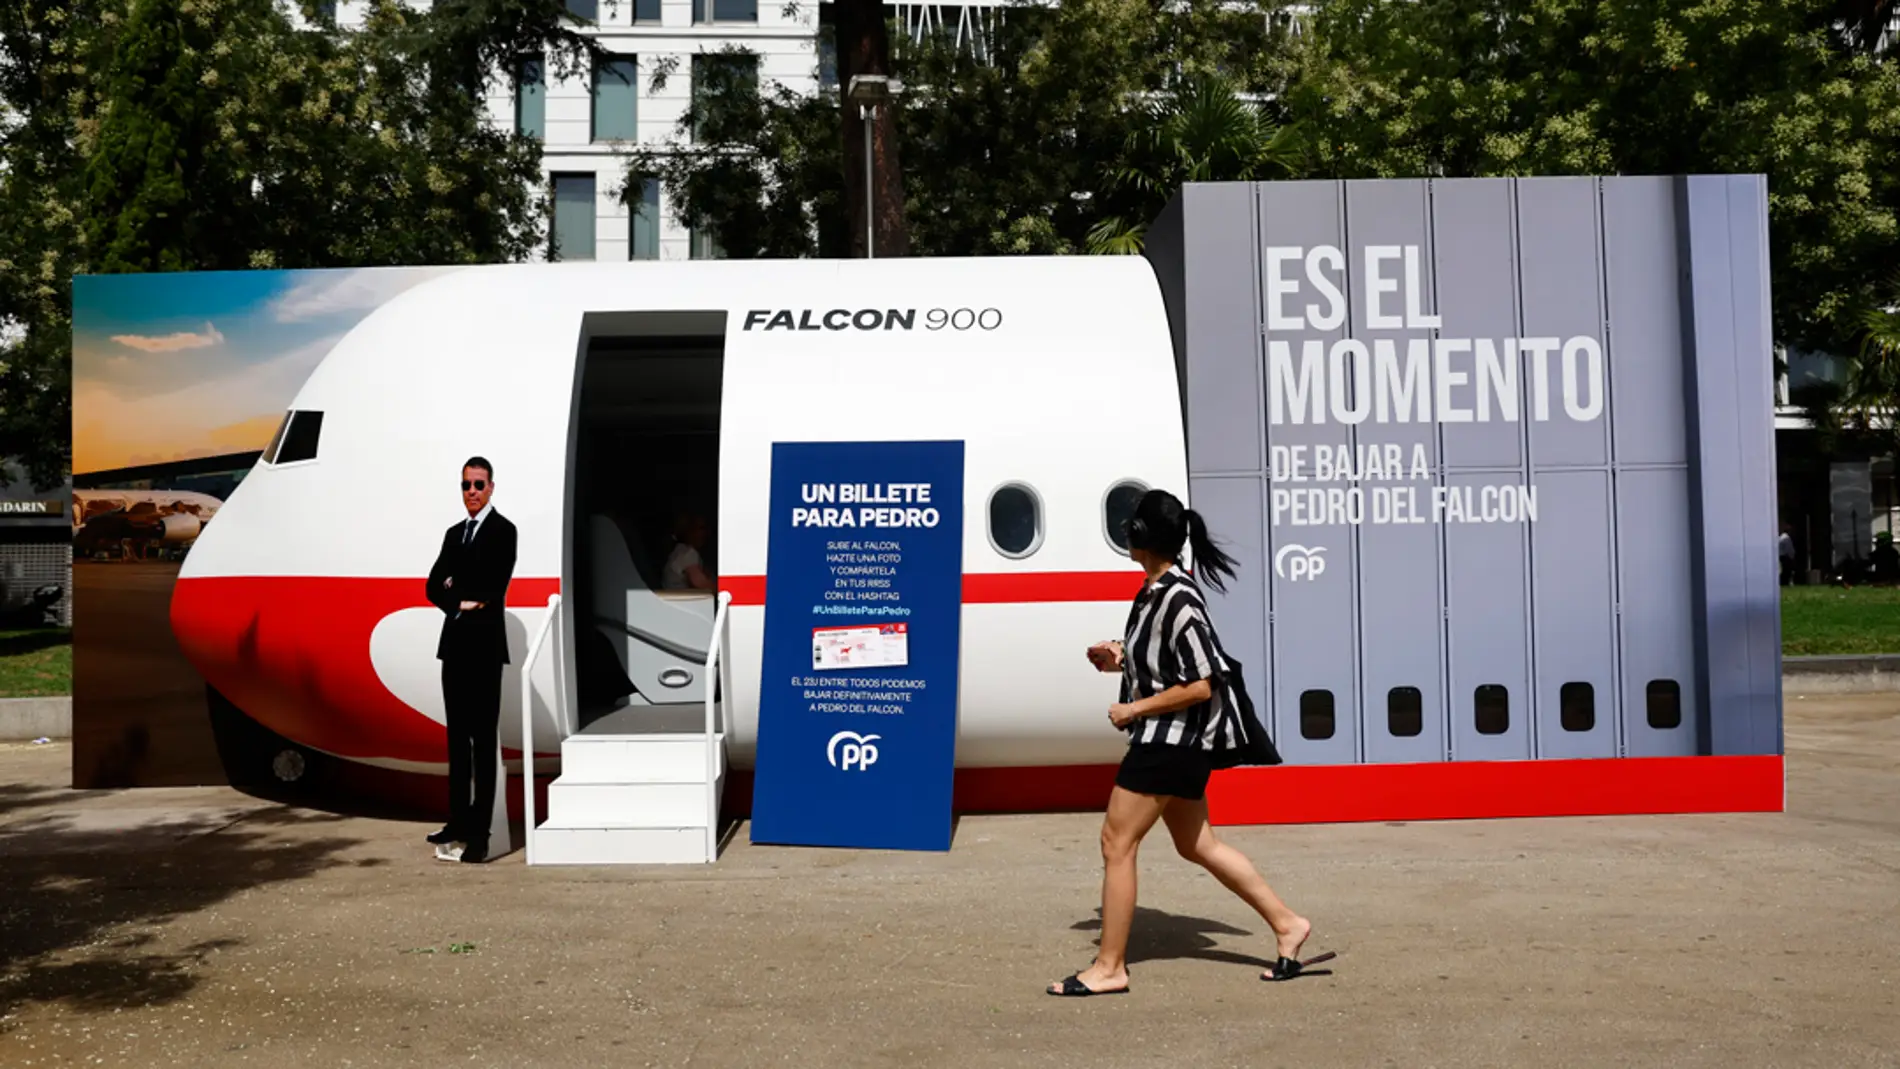 El PP ironiza con el Falcon y Pedro Sánchez e instala una cabina de avión en Madrid con un mensaje